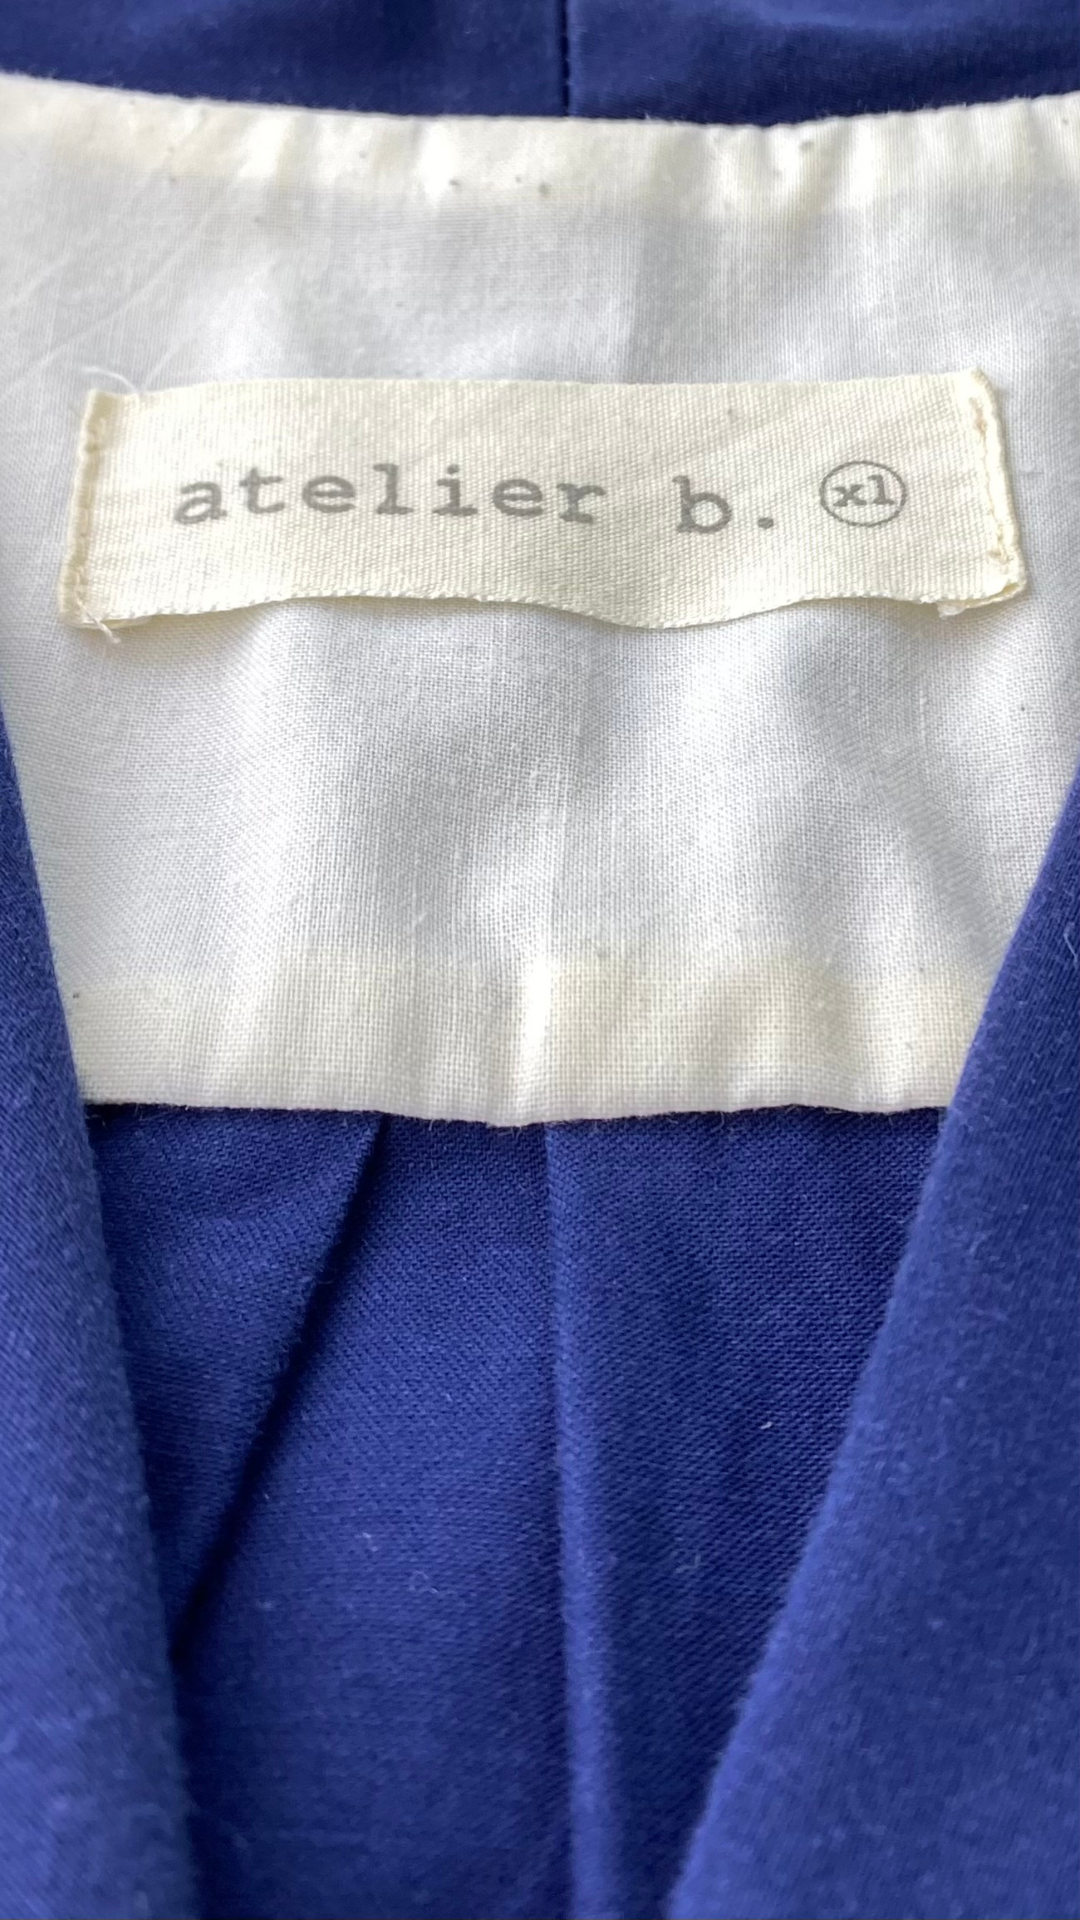 Robe chemisier à jupe ample et poches, imparfaite, marque Atelier b, taille xl (fait plus large). Vue de l'étiquette de marque et taille.